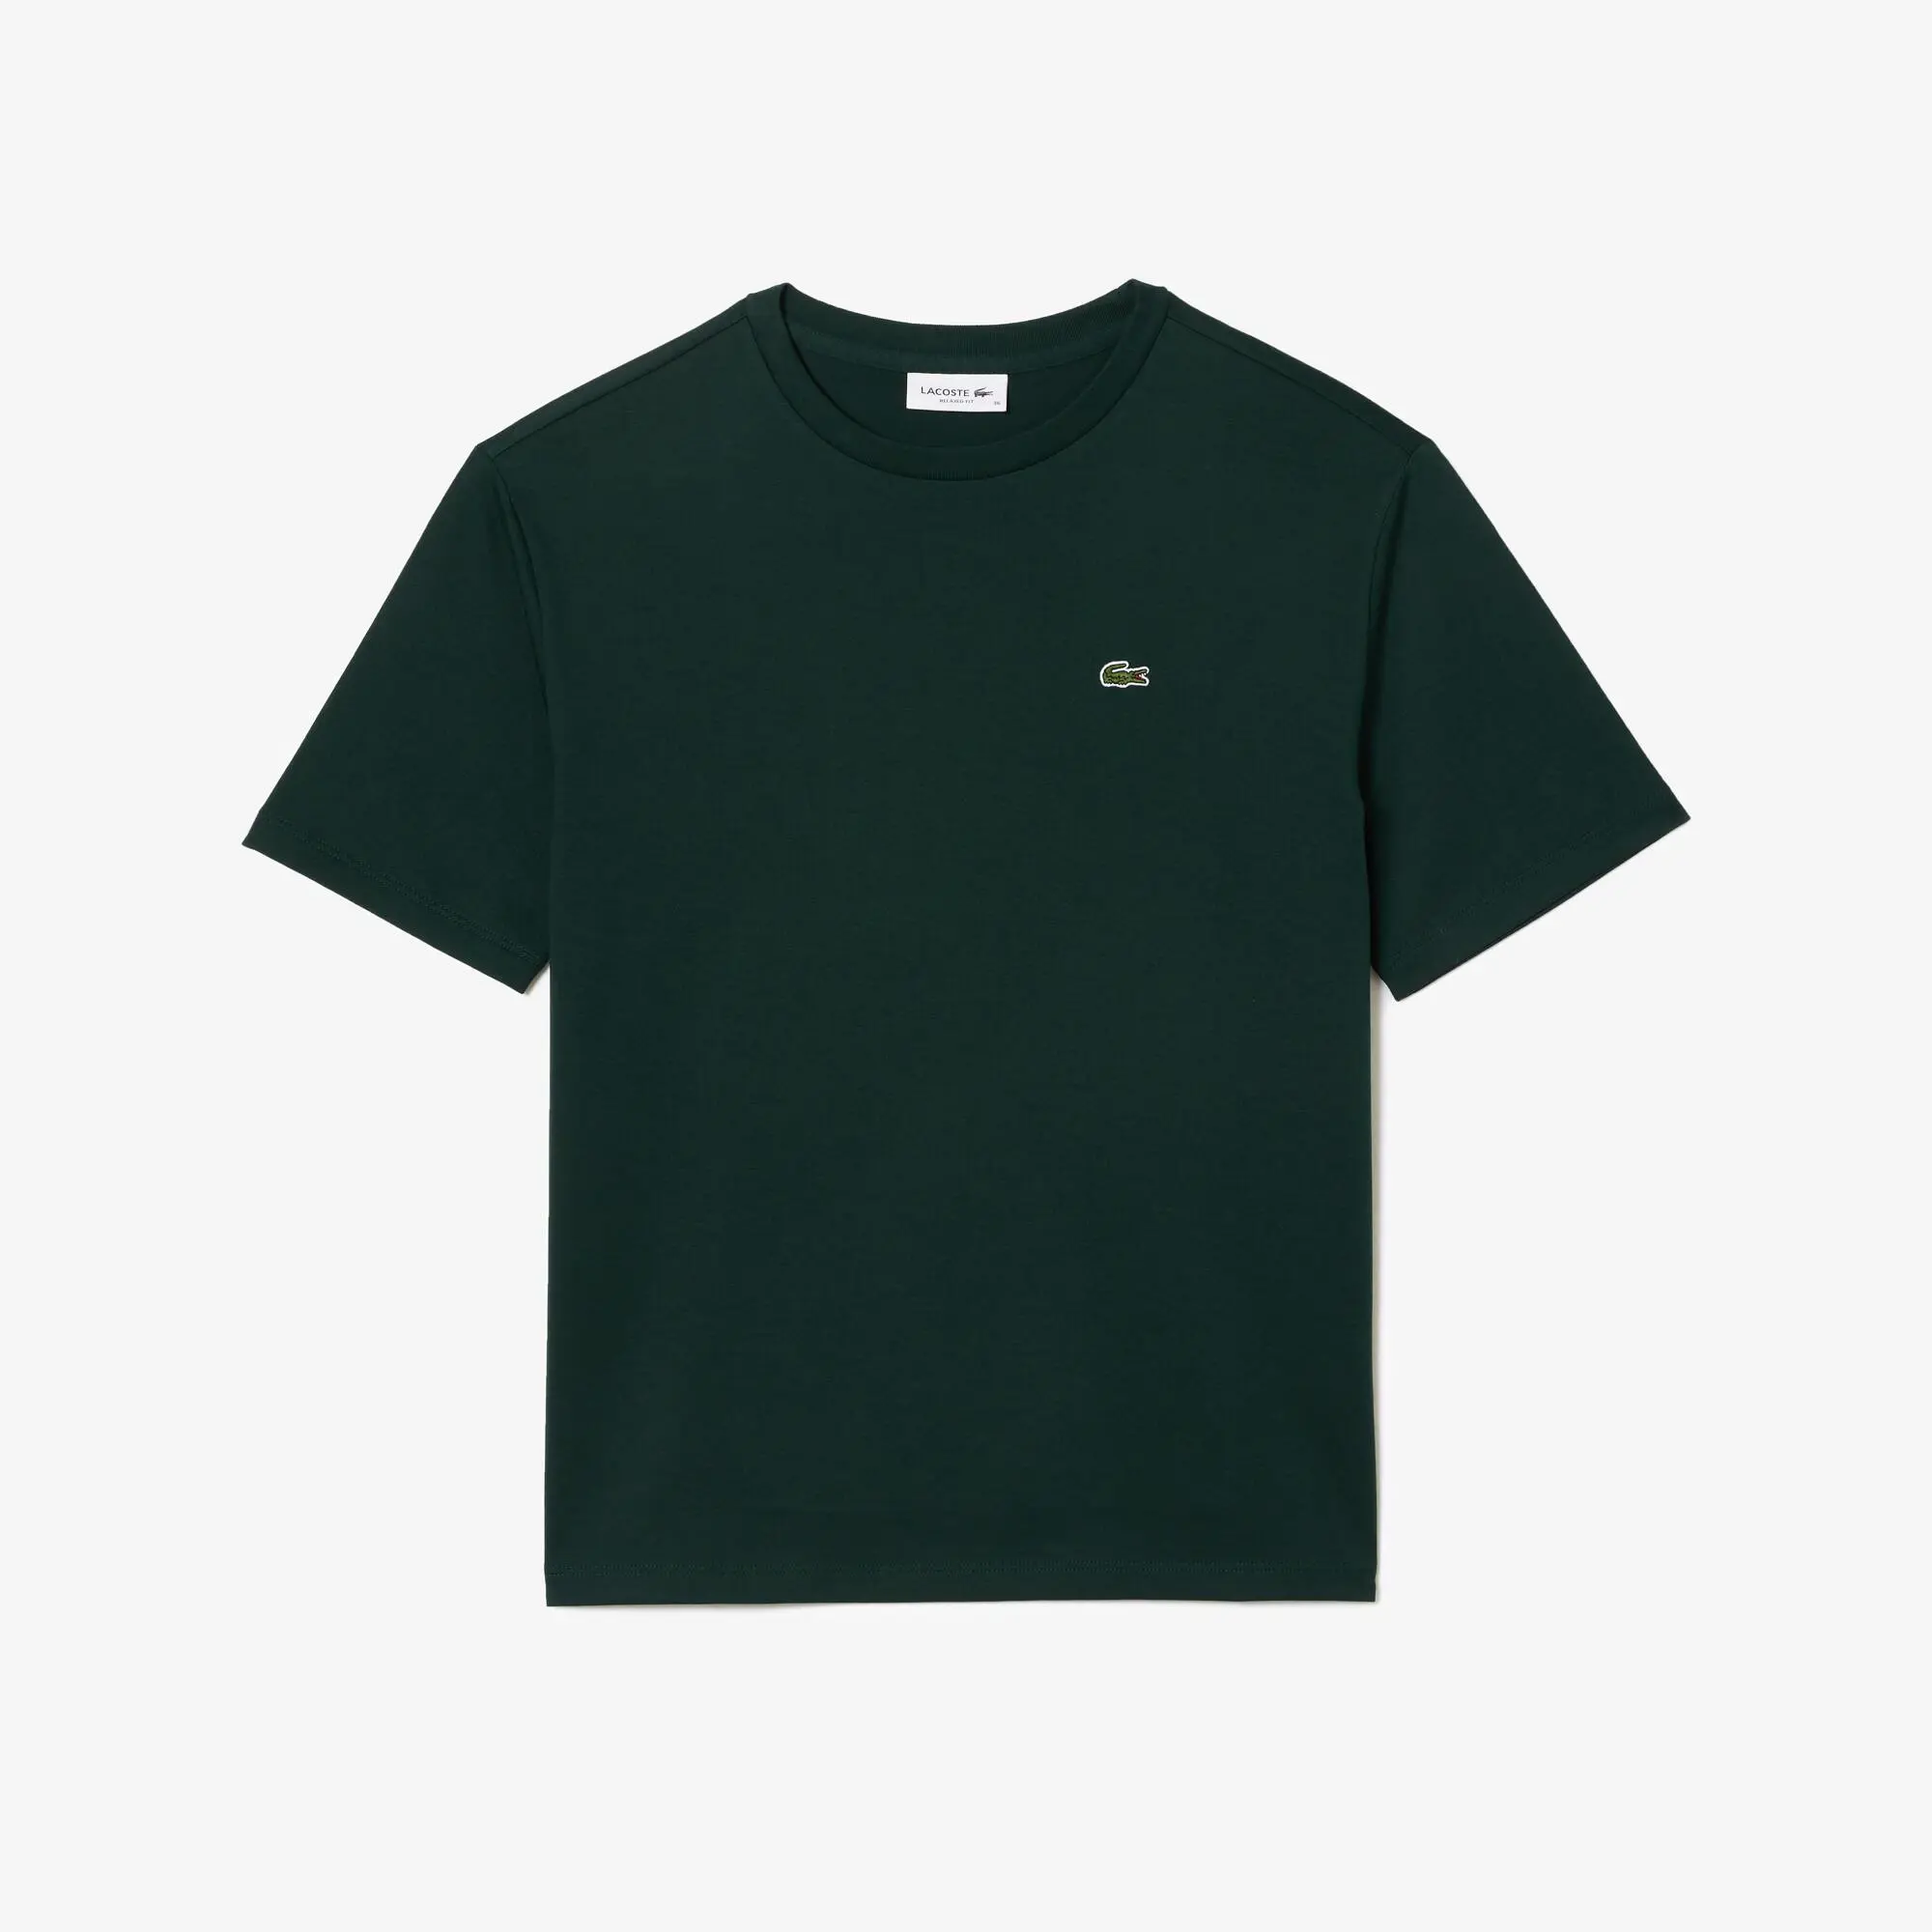 Lacoste Women’s Crew Neck Premium Cotton T-shirt. 2